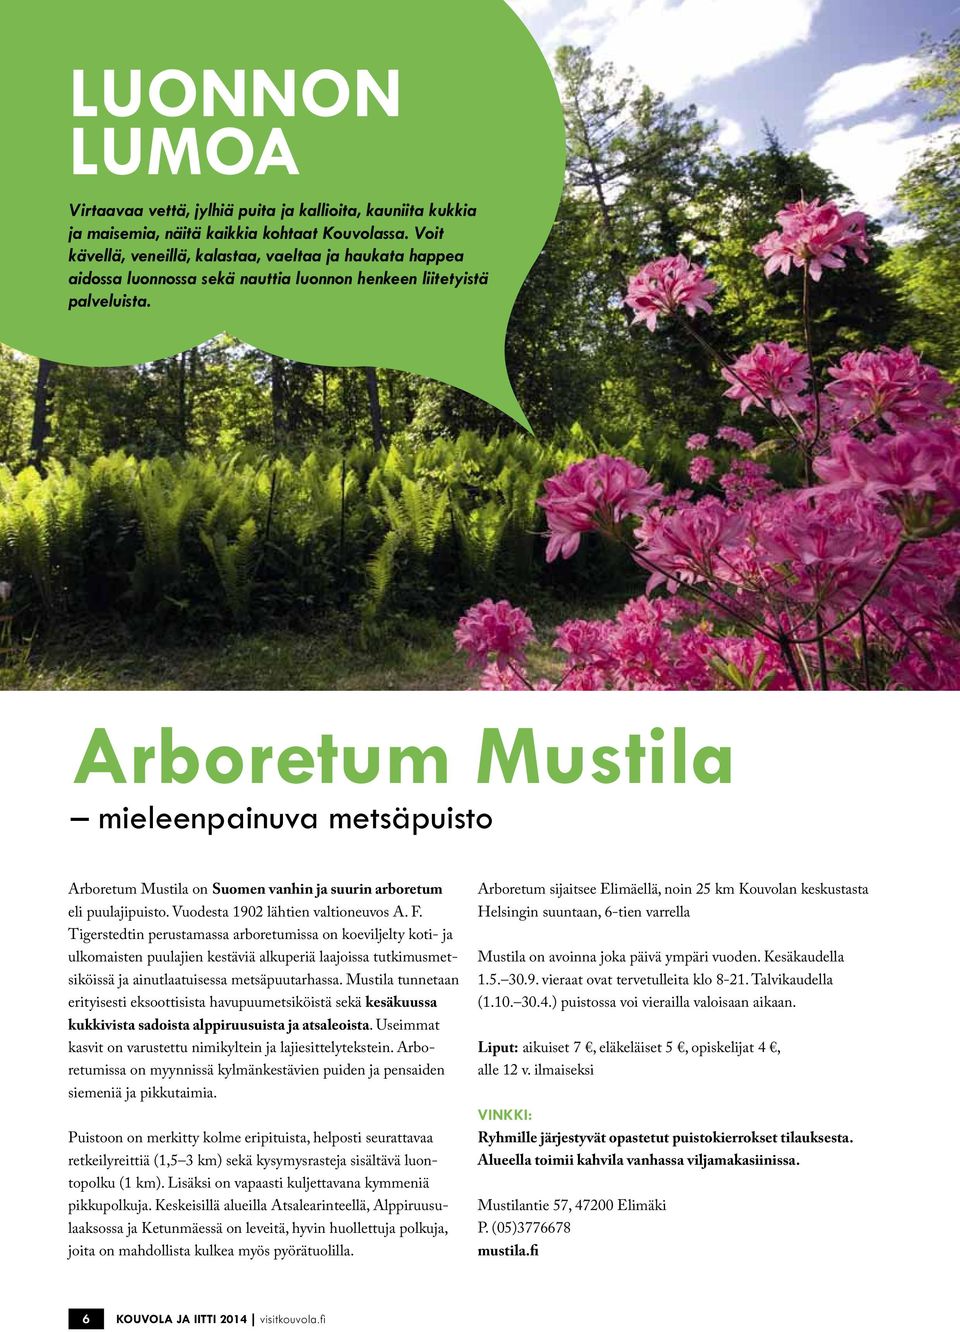 Arboretum Mustila mieleenpainuva metsäpuisto Arboretum Mustila on Suomen vanhin ja suurin arboretum eli puulajipuisto. Vuodesta 1902 lähtien valtioneuvos A. F.